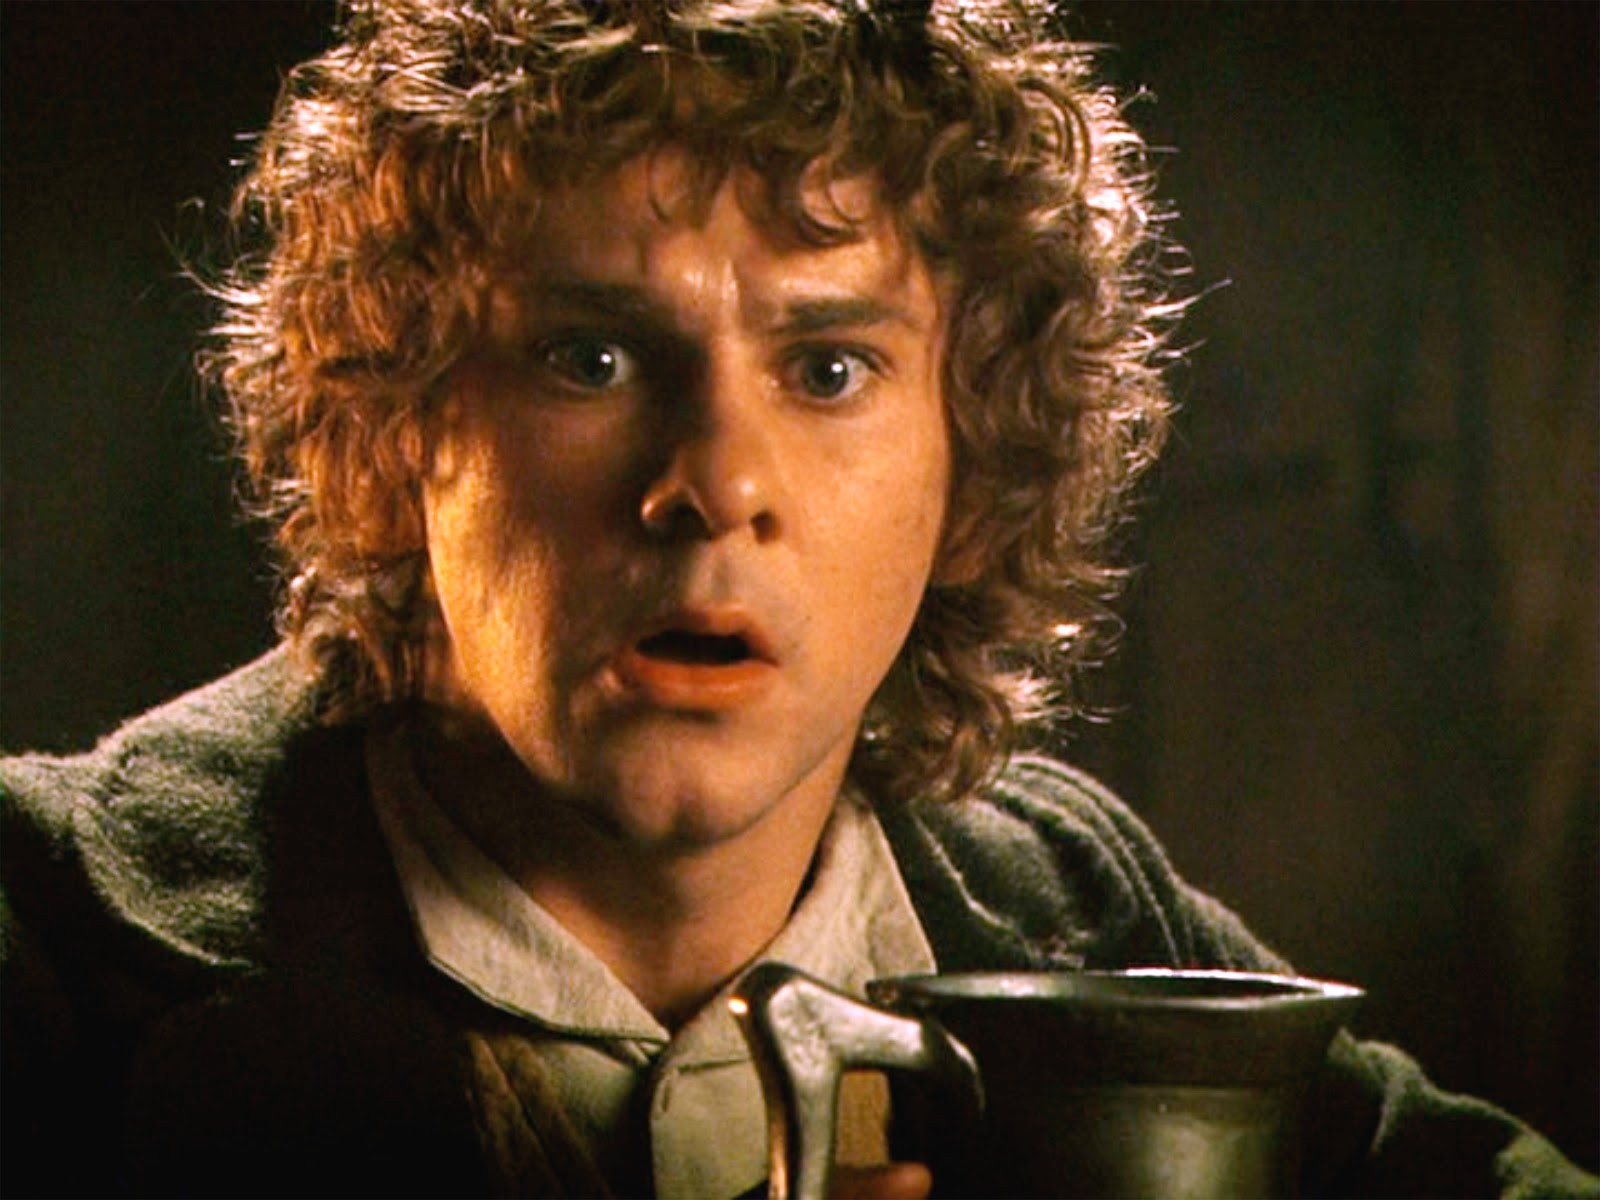 Merry, o hobbit interpretado por Dominic Monaghan (Foto: Divulgação)